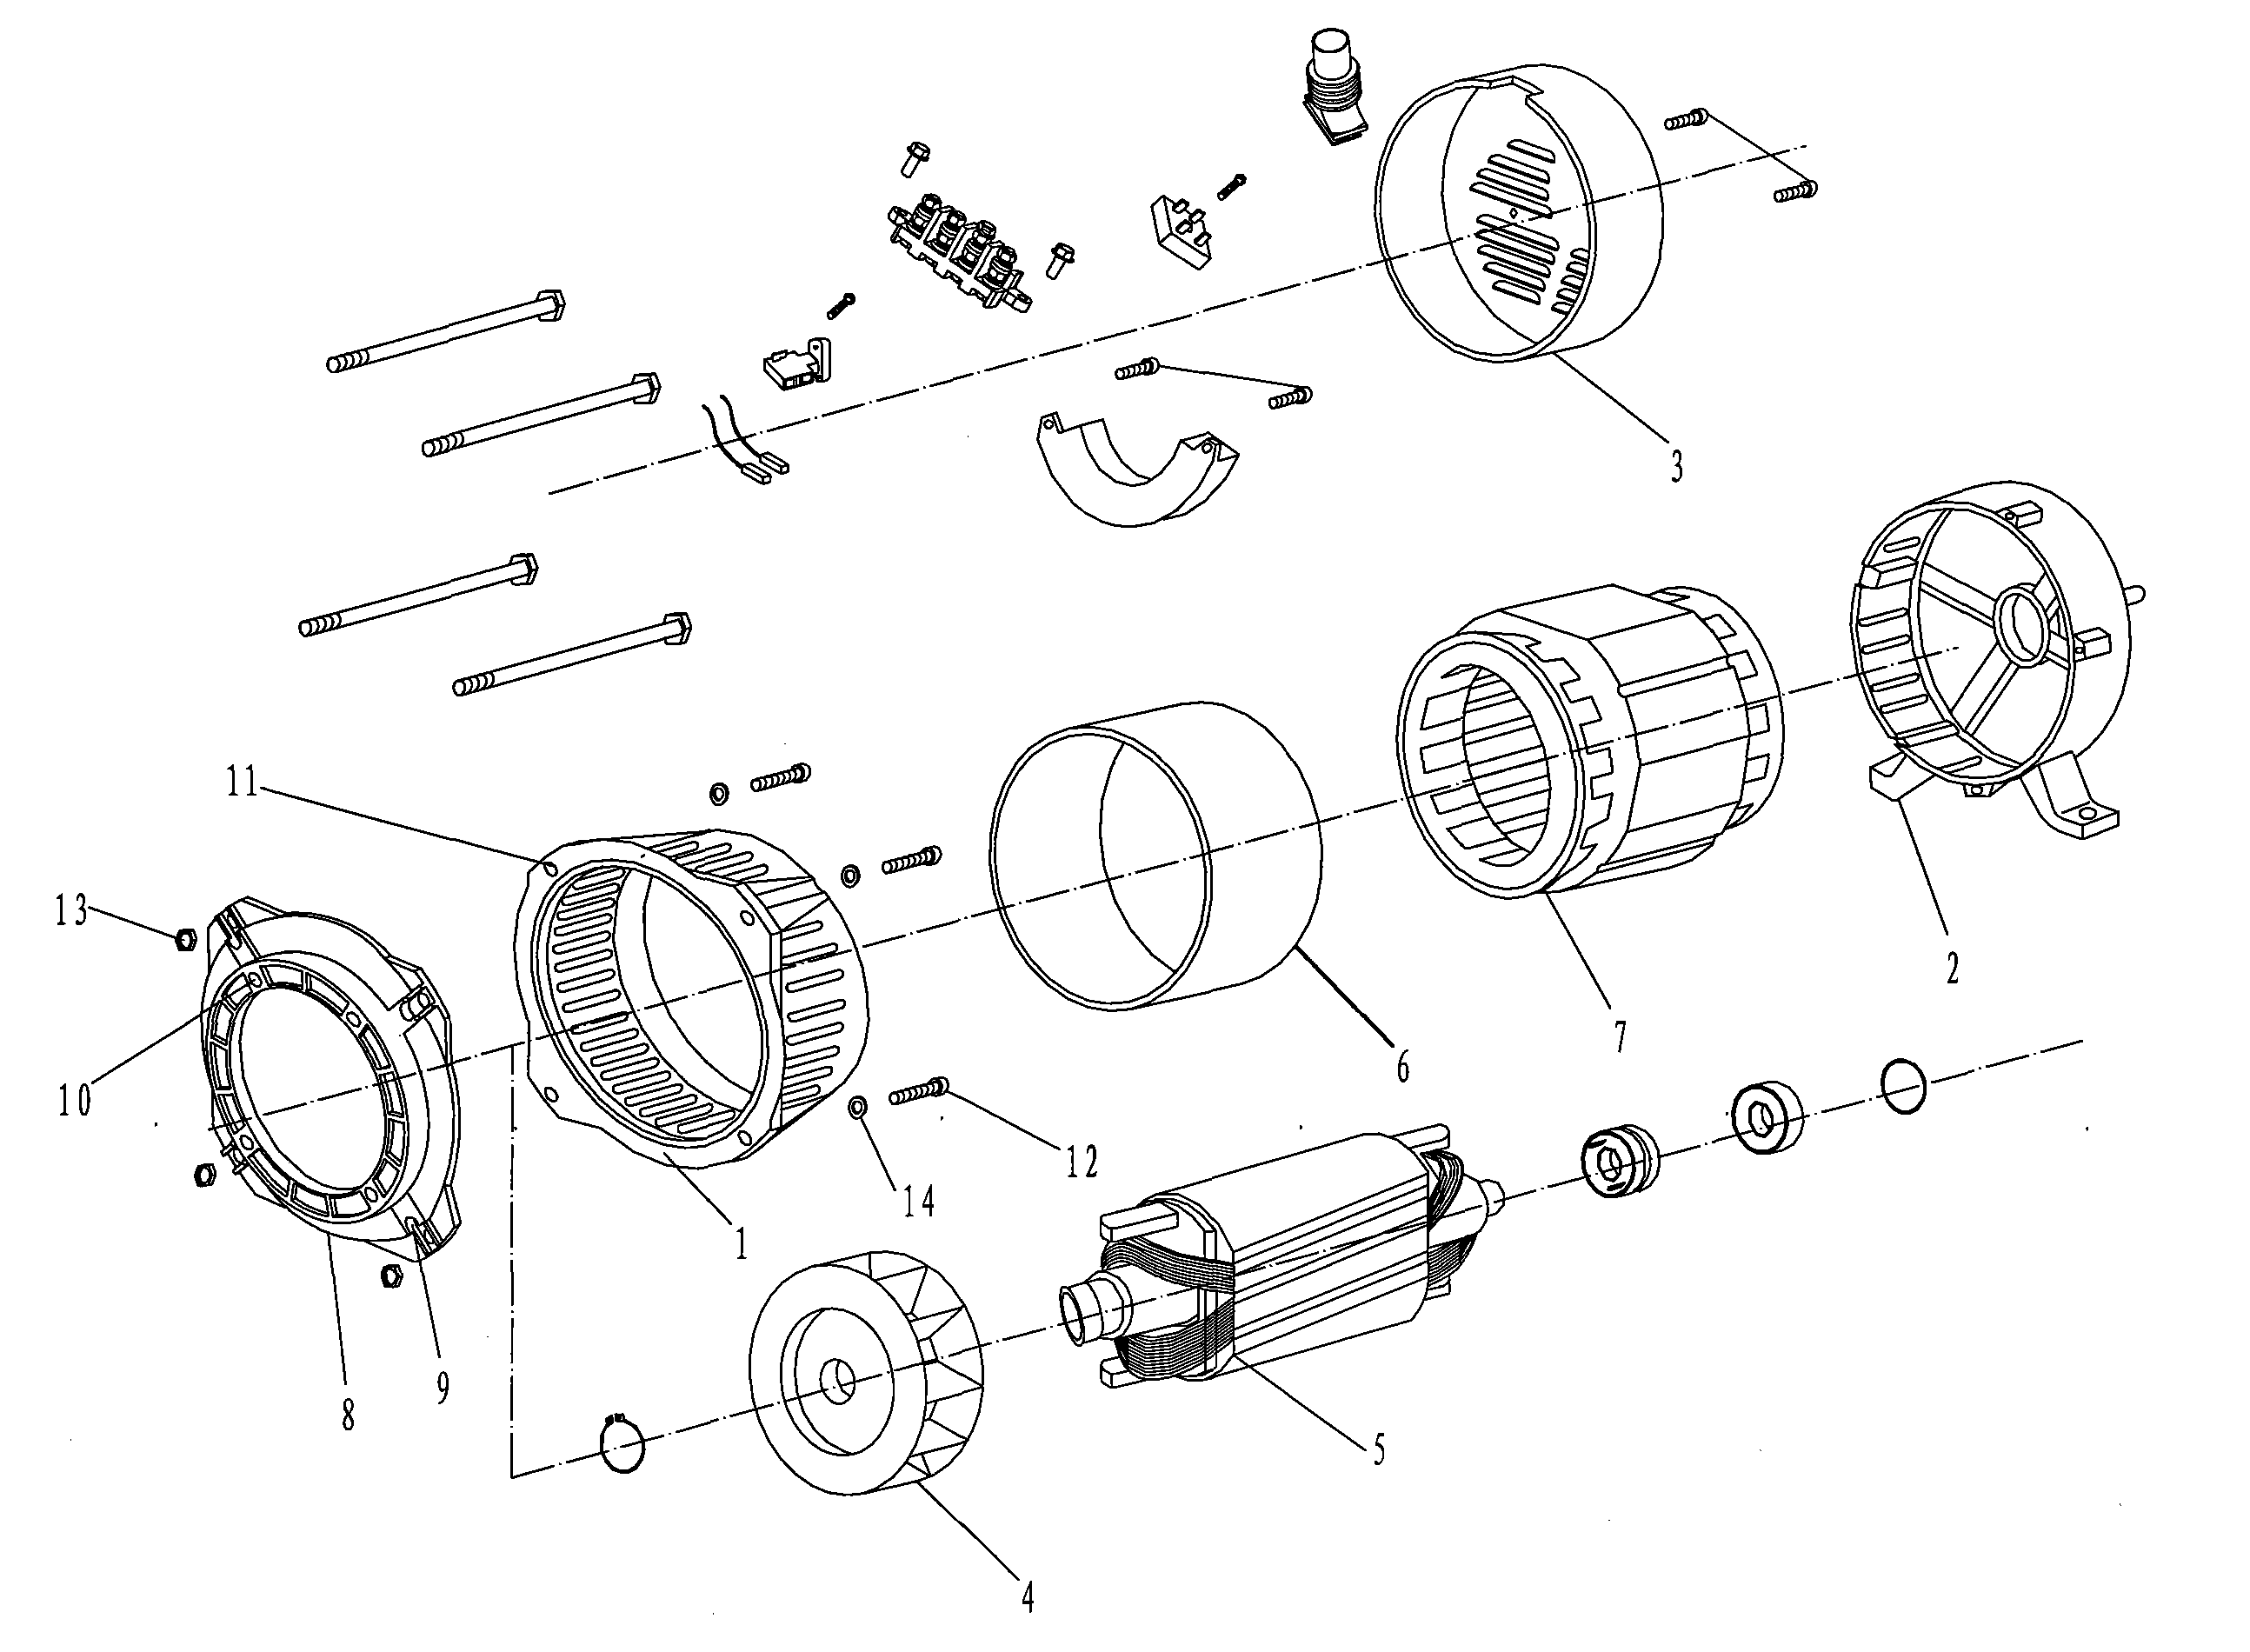 发电机结构简图图片